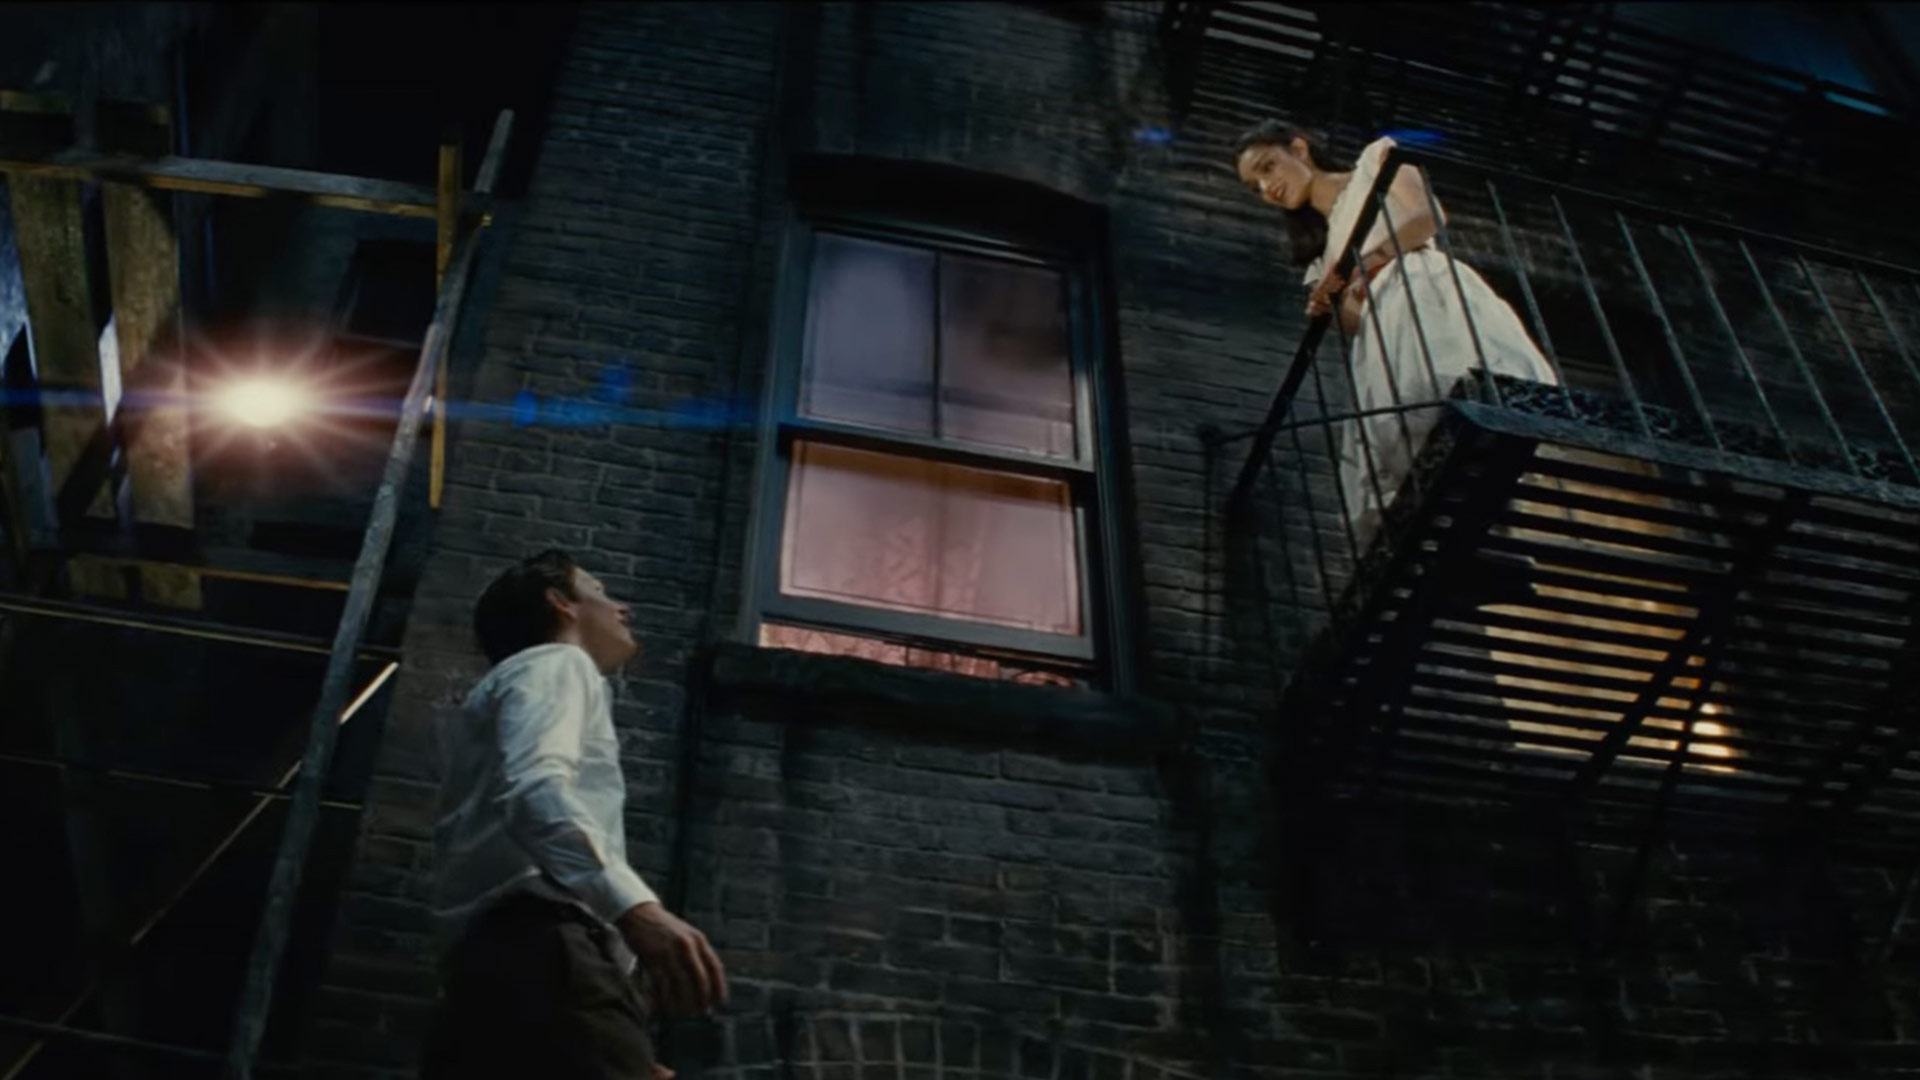 تونی در حال بالا رفتن از نرده ها در فیلم داستان وست ساید